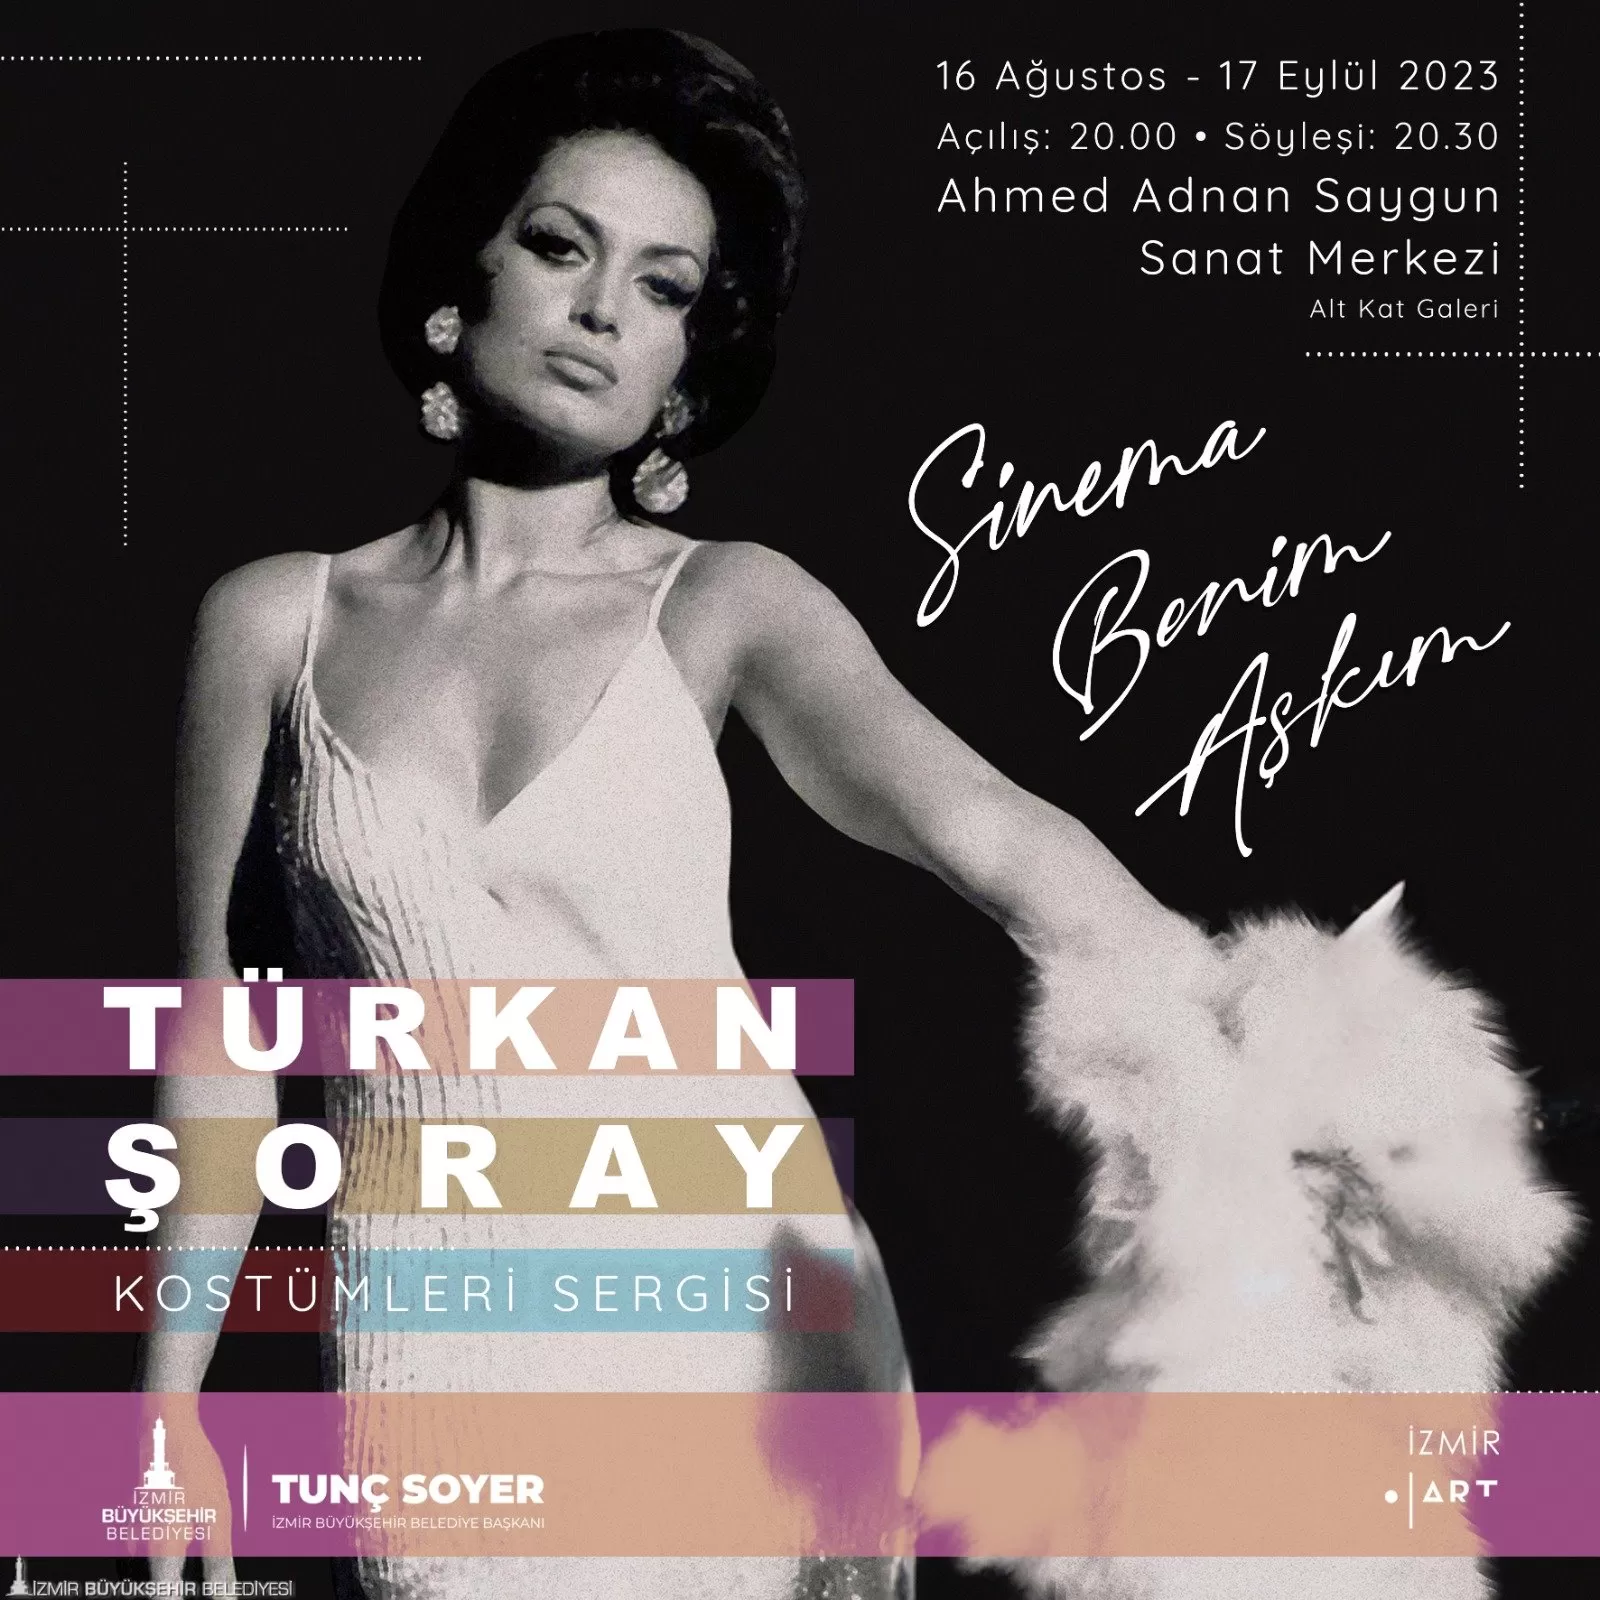 Ahmed Adnan Saygun Sanat Merkezi’nde yapılacak "Sinema Benim Aşkım Türkan Şoray Kostümleri” sergisinin açılışına Türkan Şoray da katılarak hayranlarıyla buluşacak.